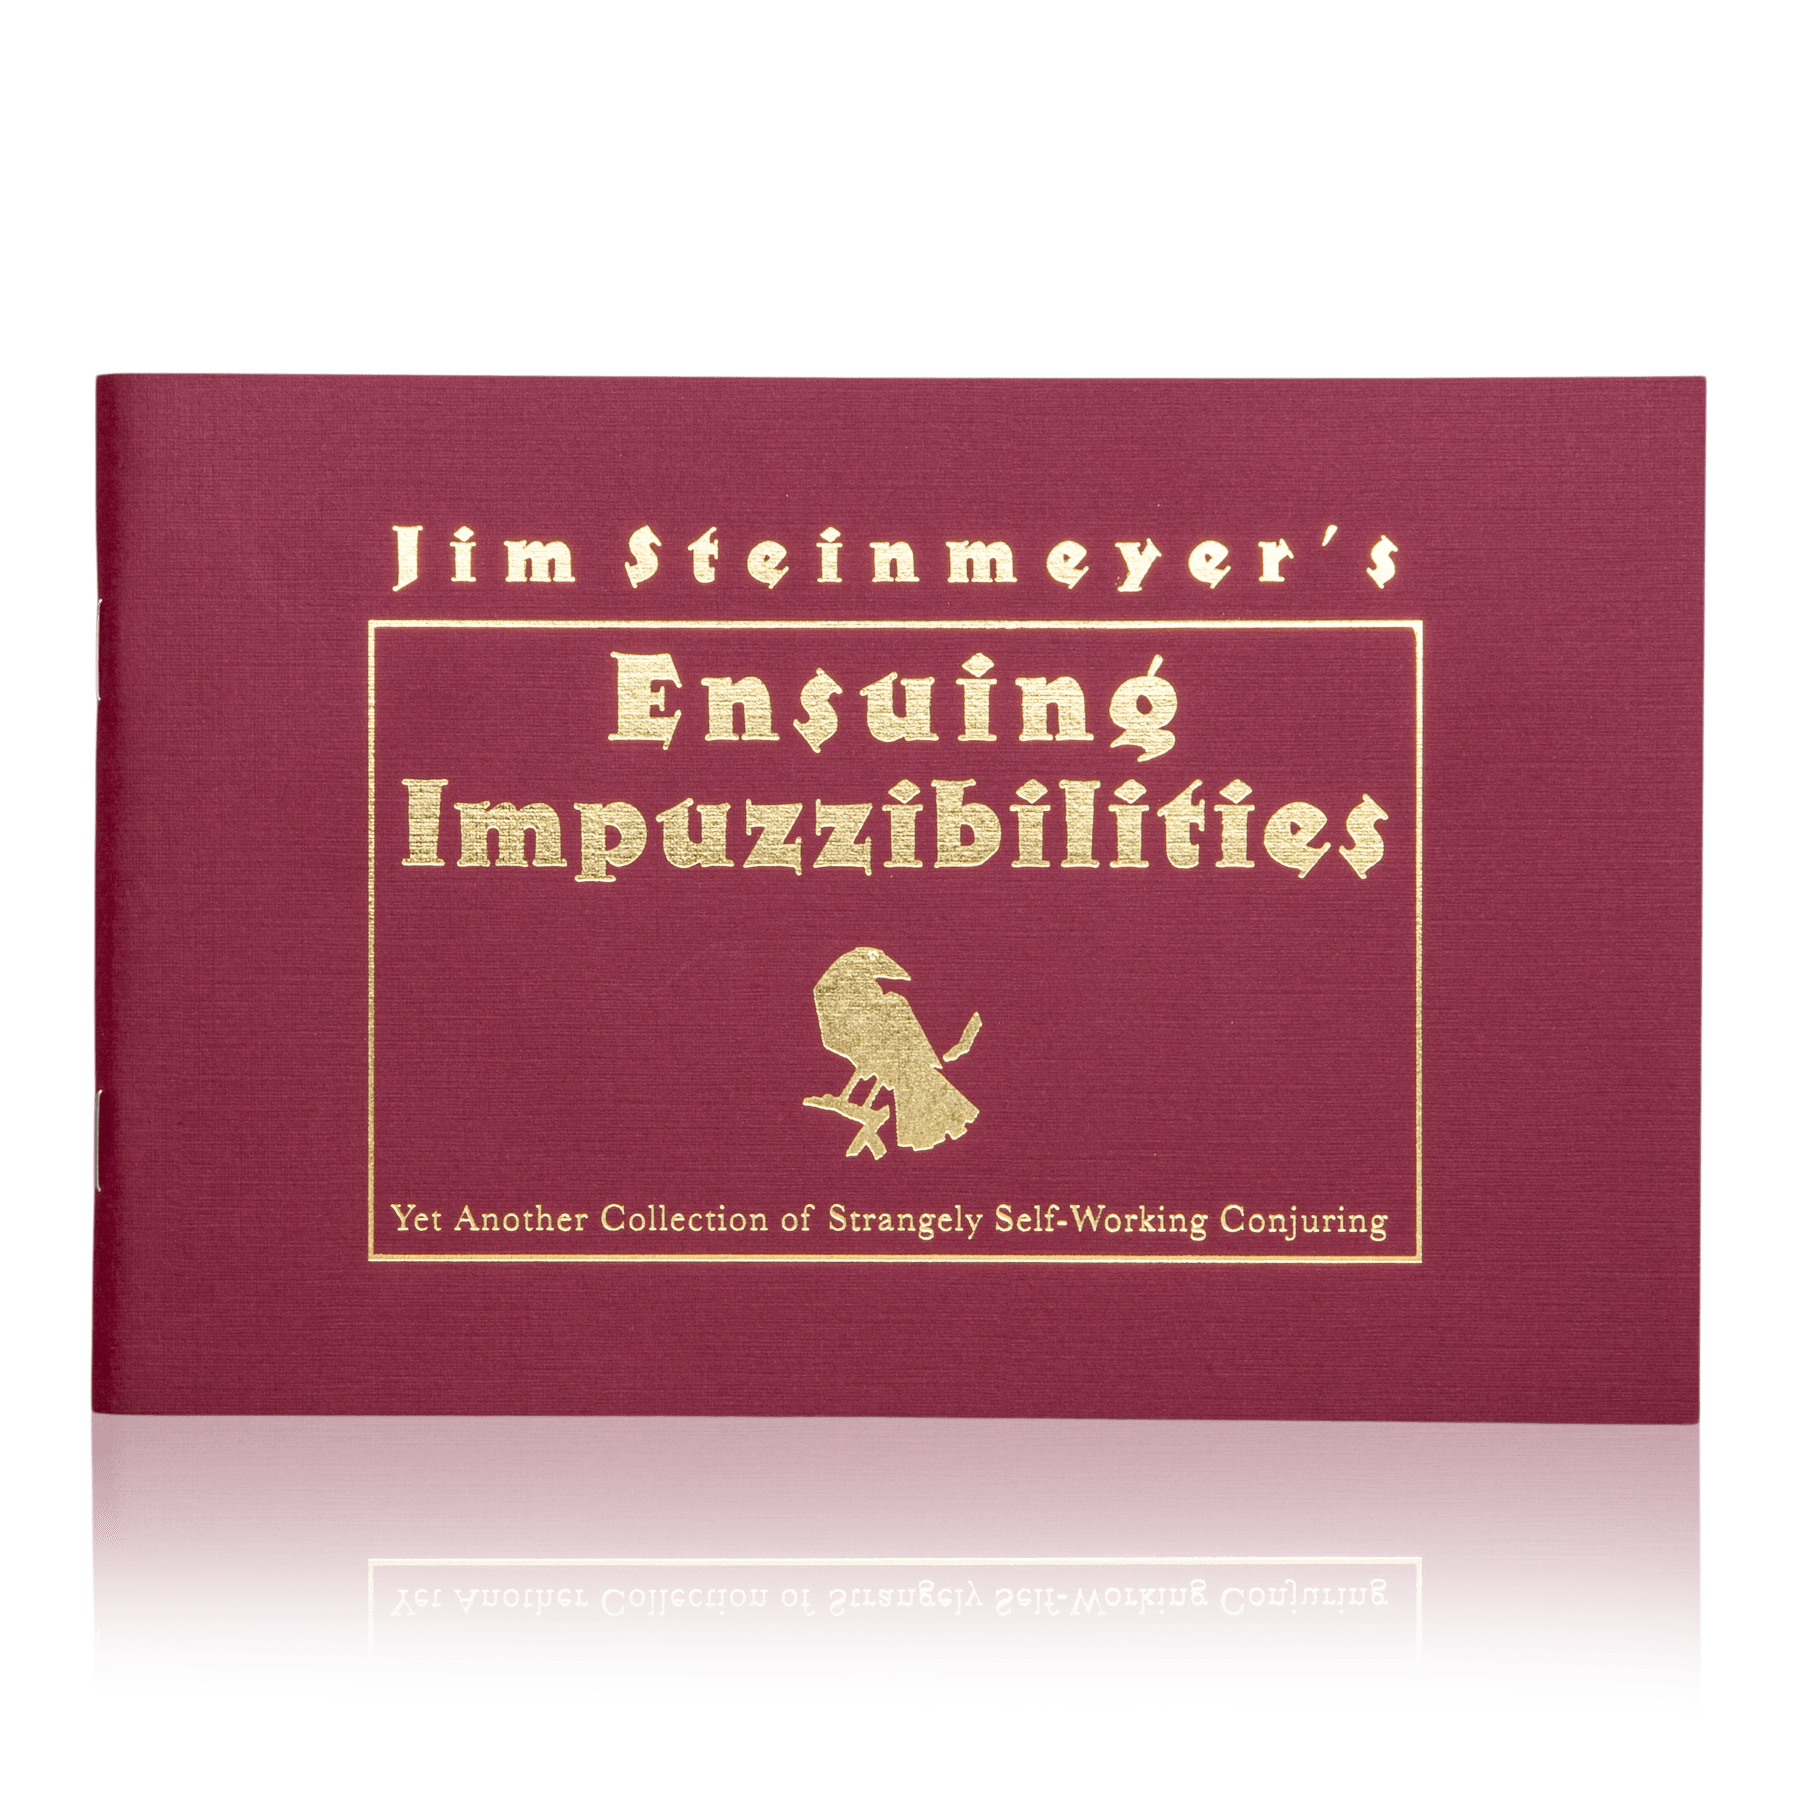 Impuzzibilities by Jim Steinmeyer